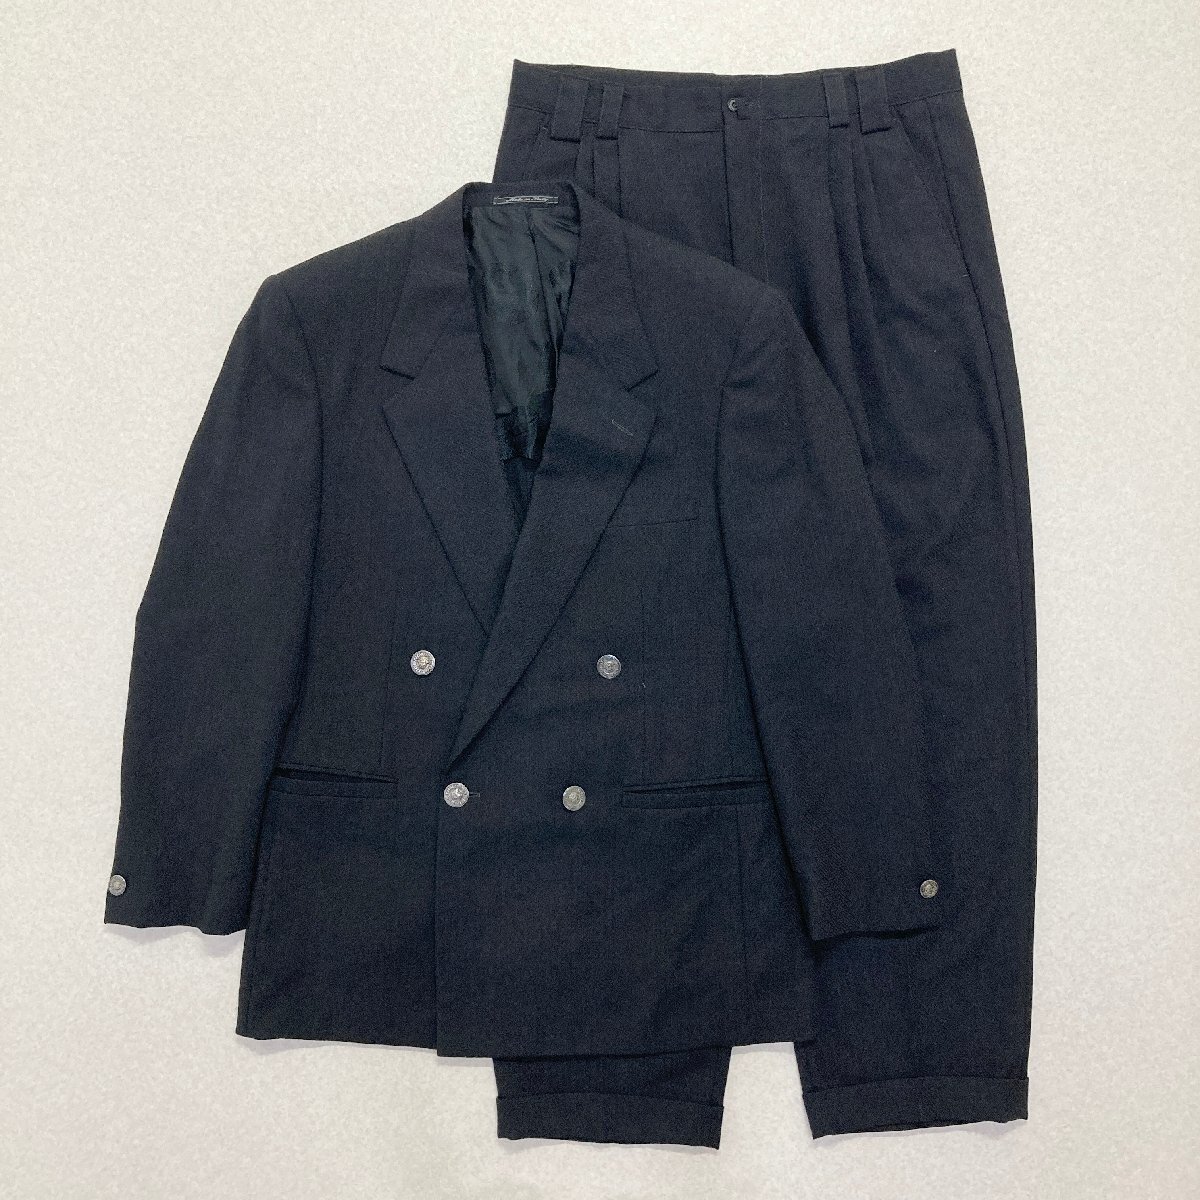 ●GIANNI VERSACE ジャンニ ヴェルサーチ セットアップ スーツ ジャケット パンツ ダブル イタリア製 ブラック サイズ52 メンズ 1.18kg●_画像1